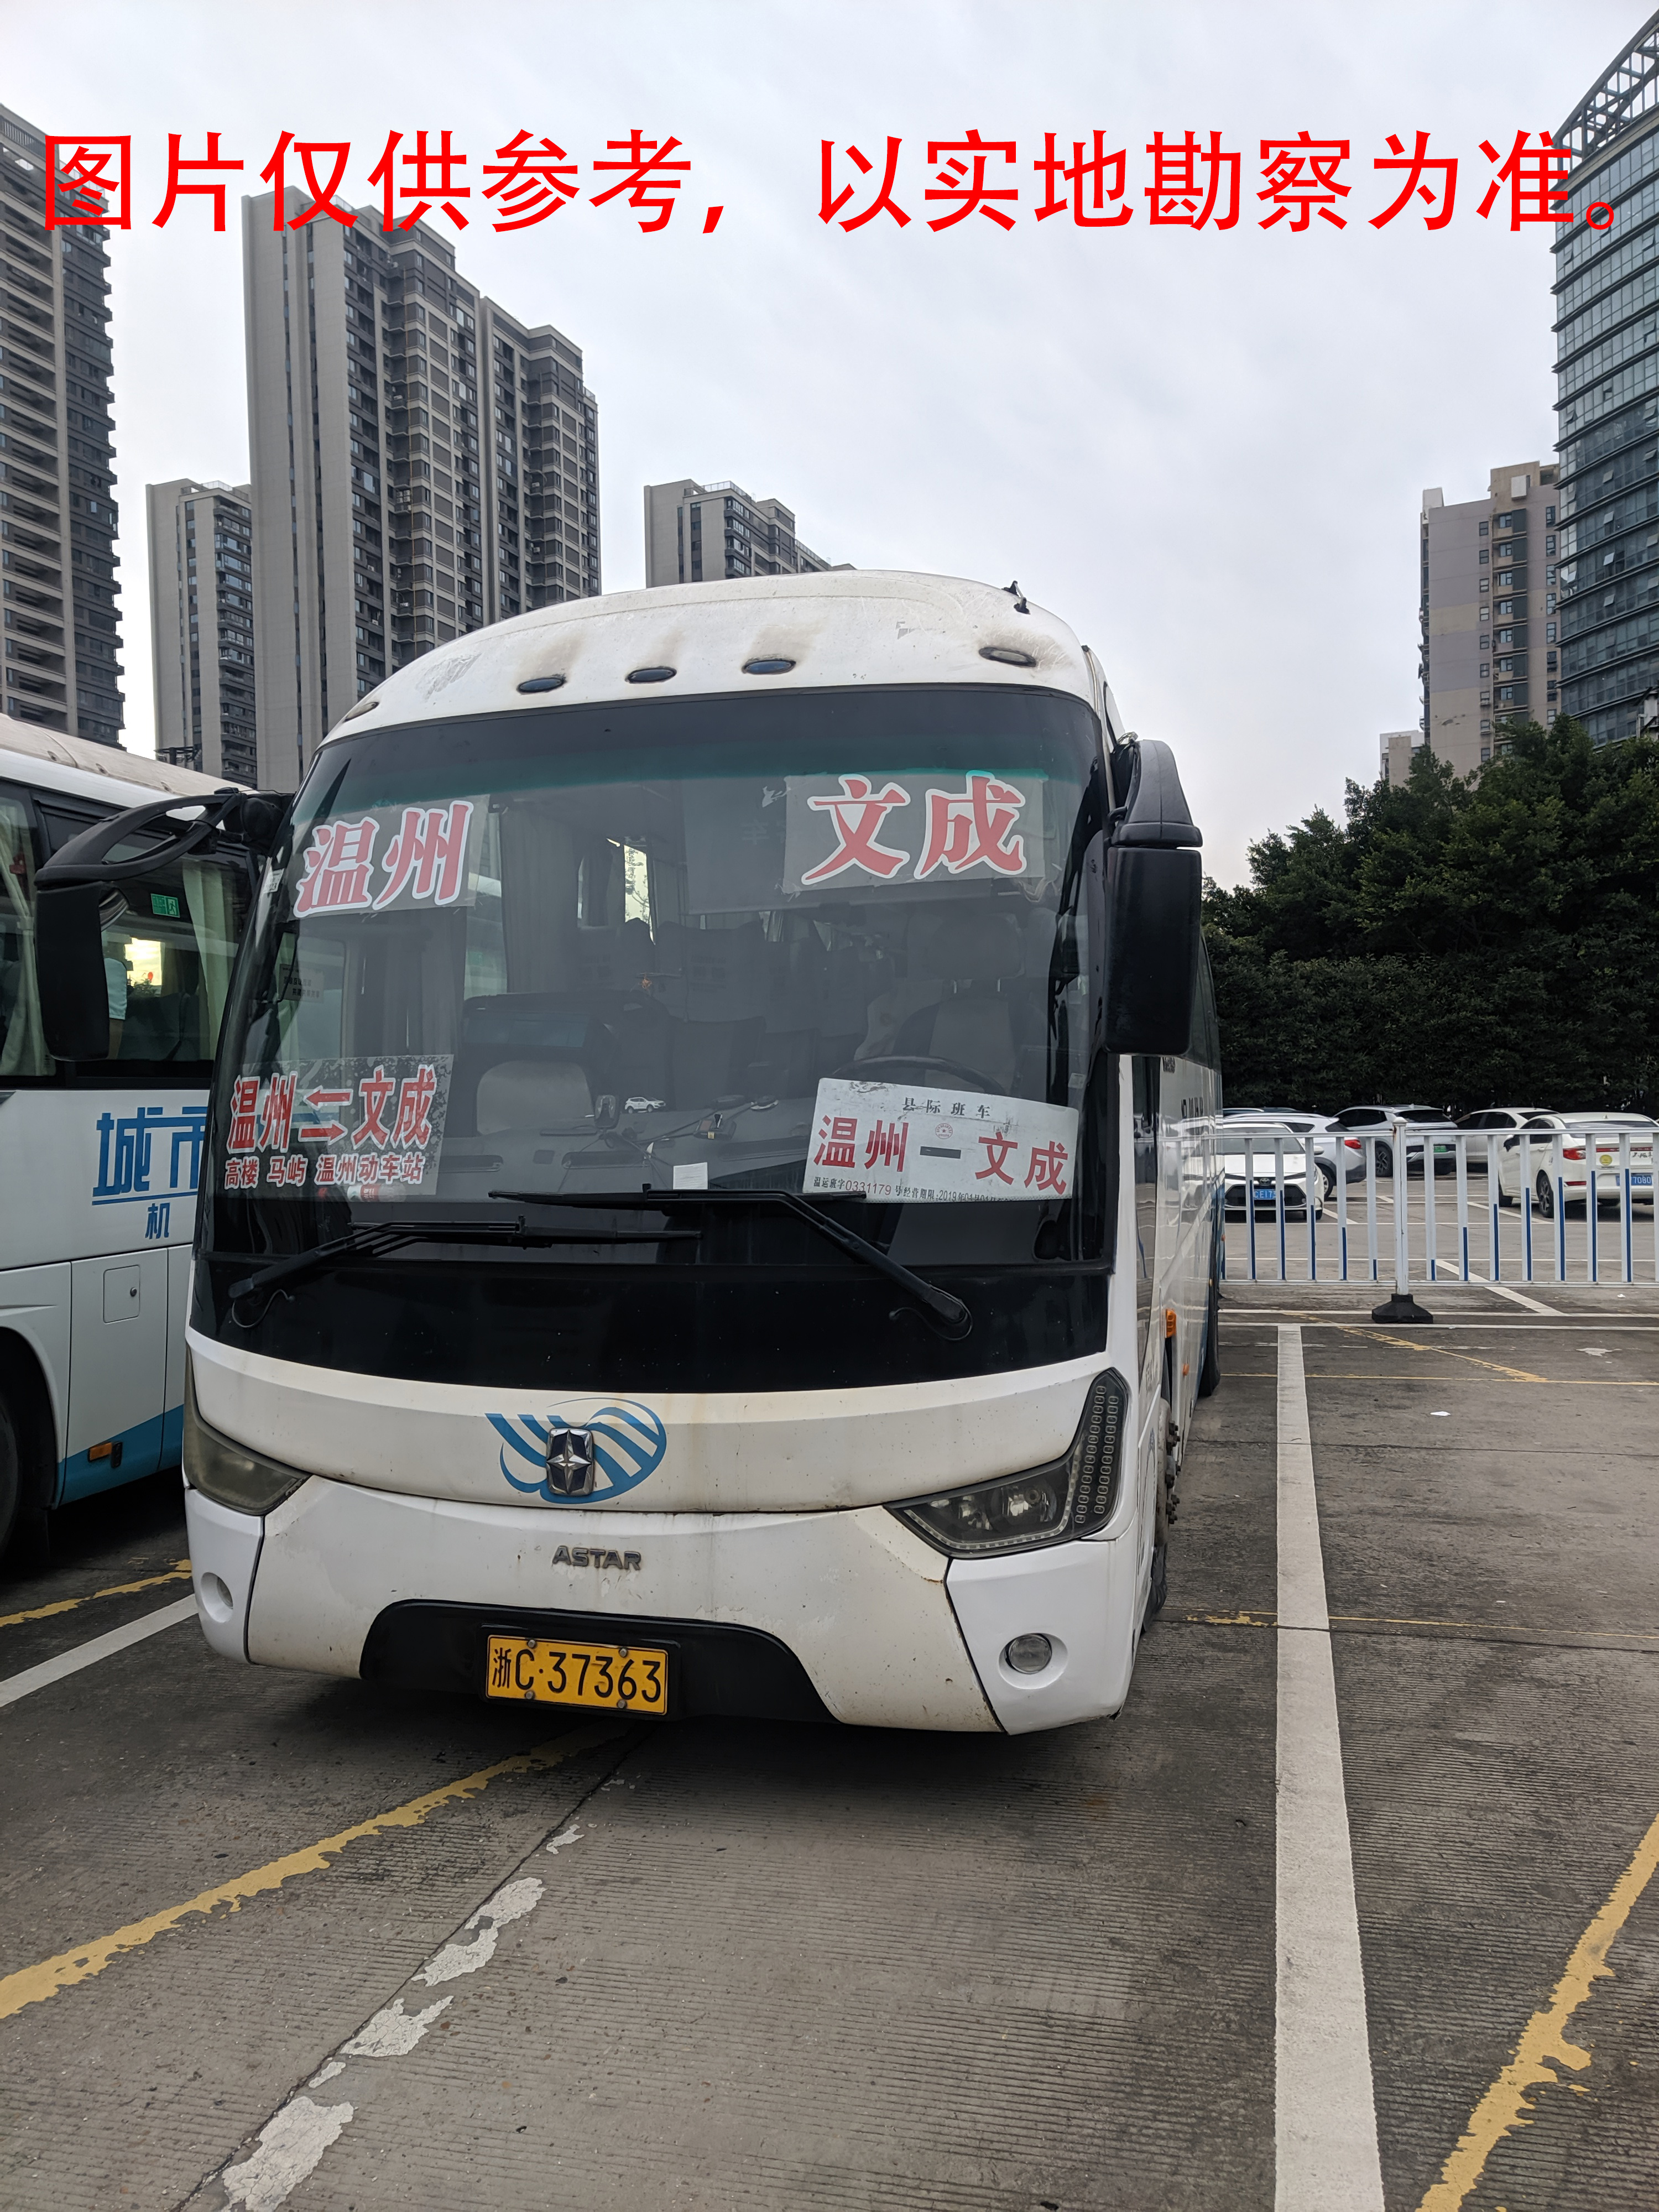 浙C37363亚星牌大型普通客车转让出售招标